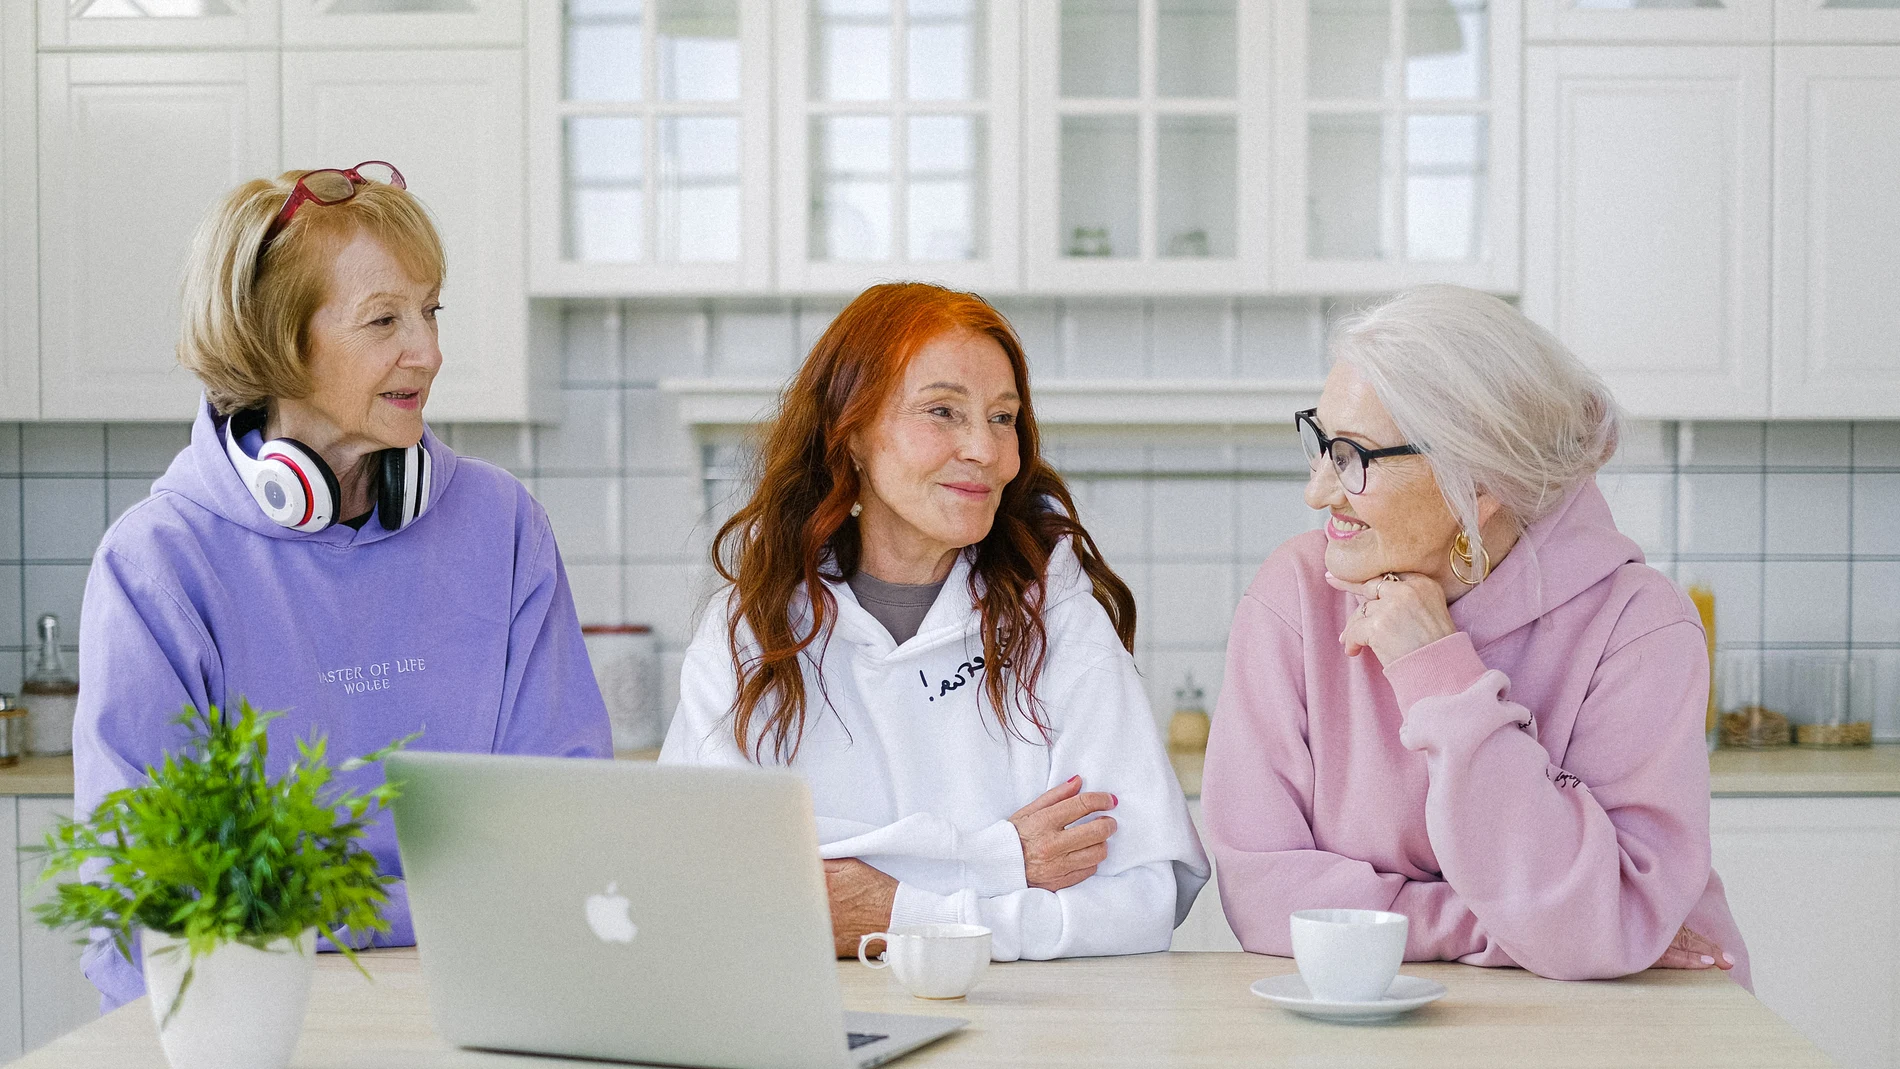 Tres mujeres conversan alrededor de un ordenador